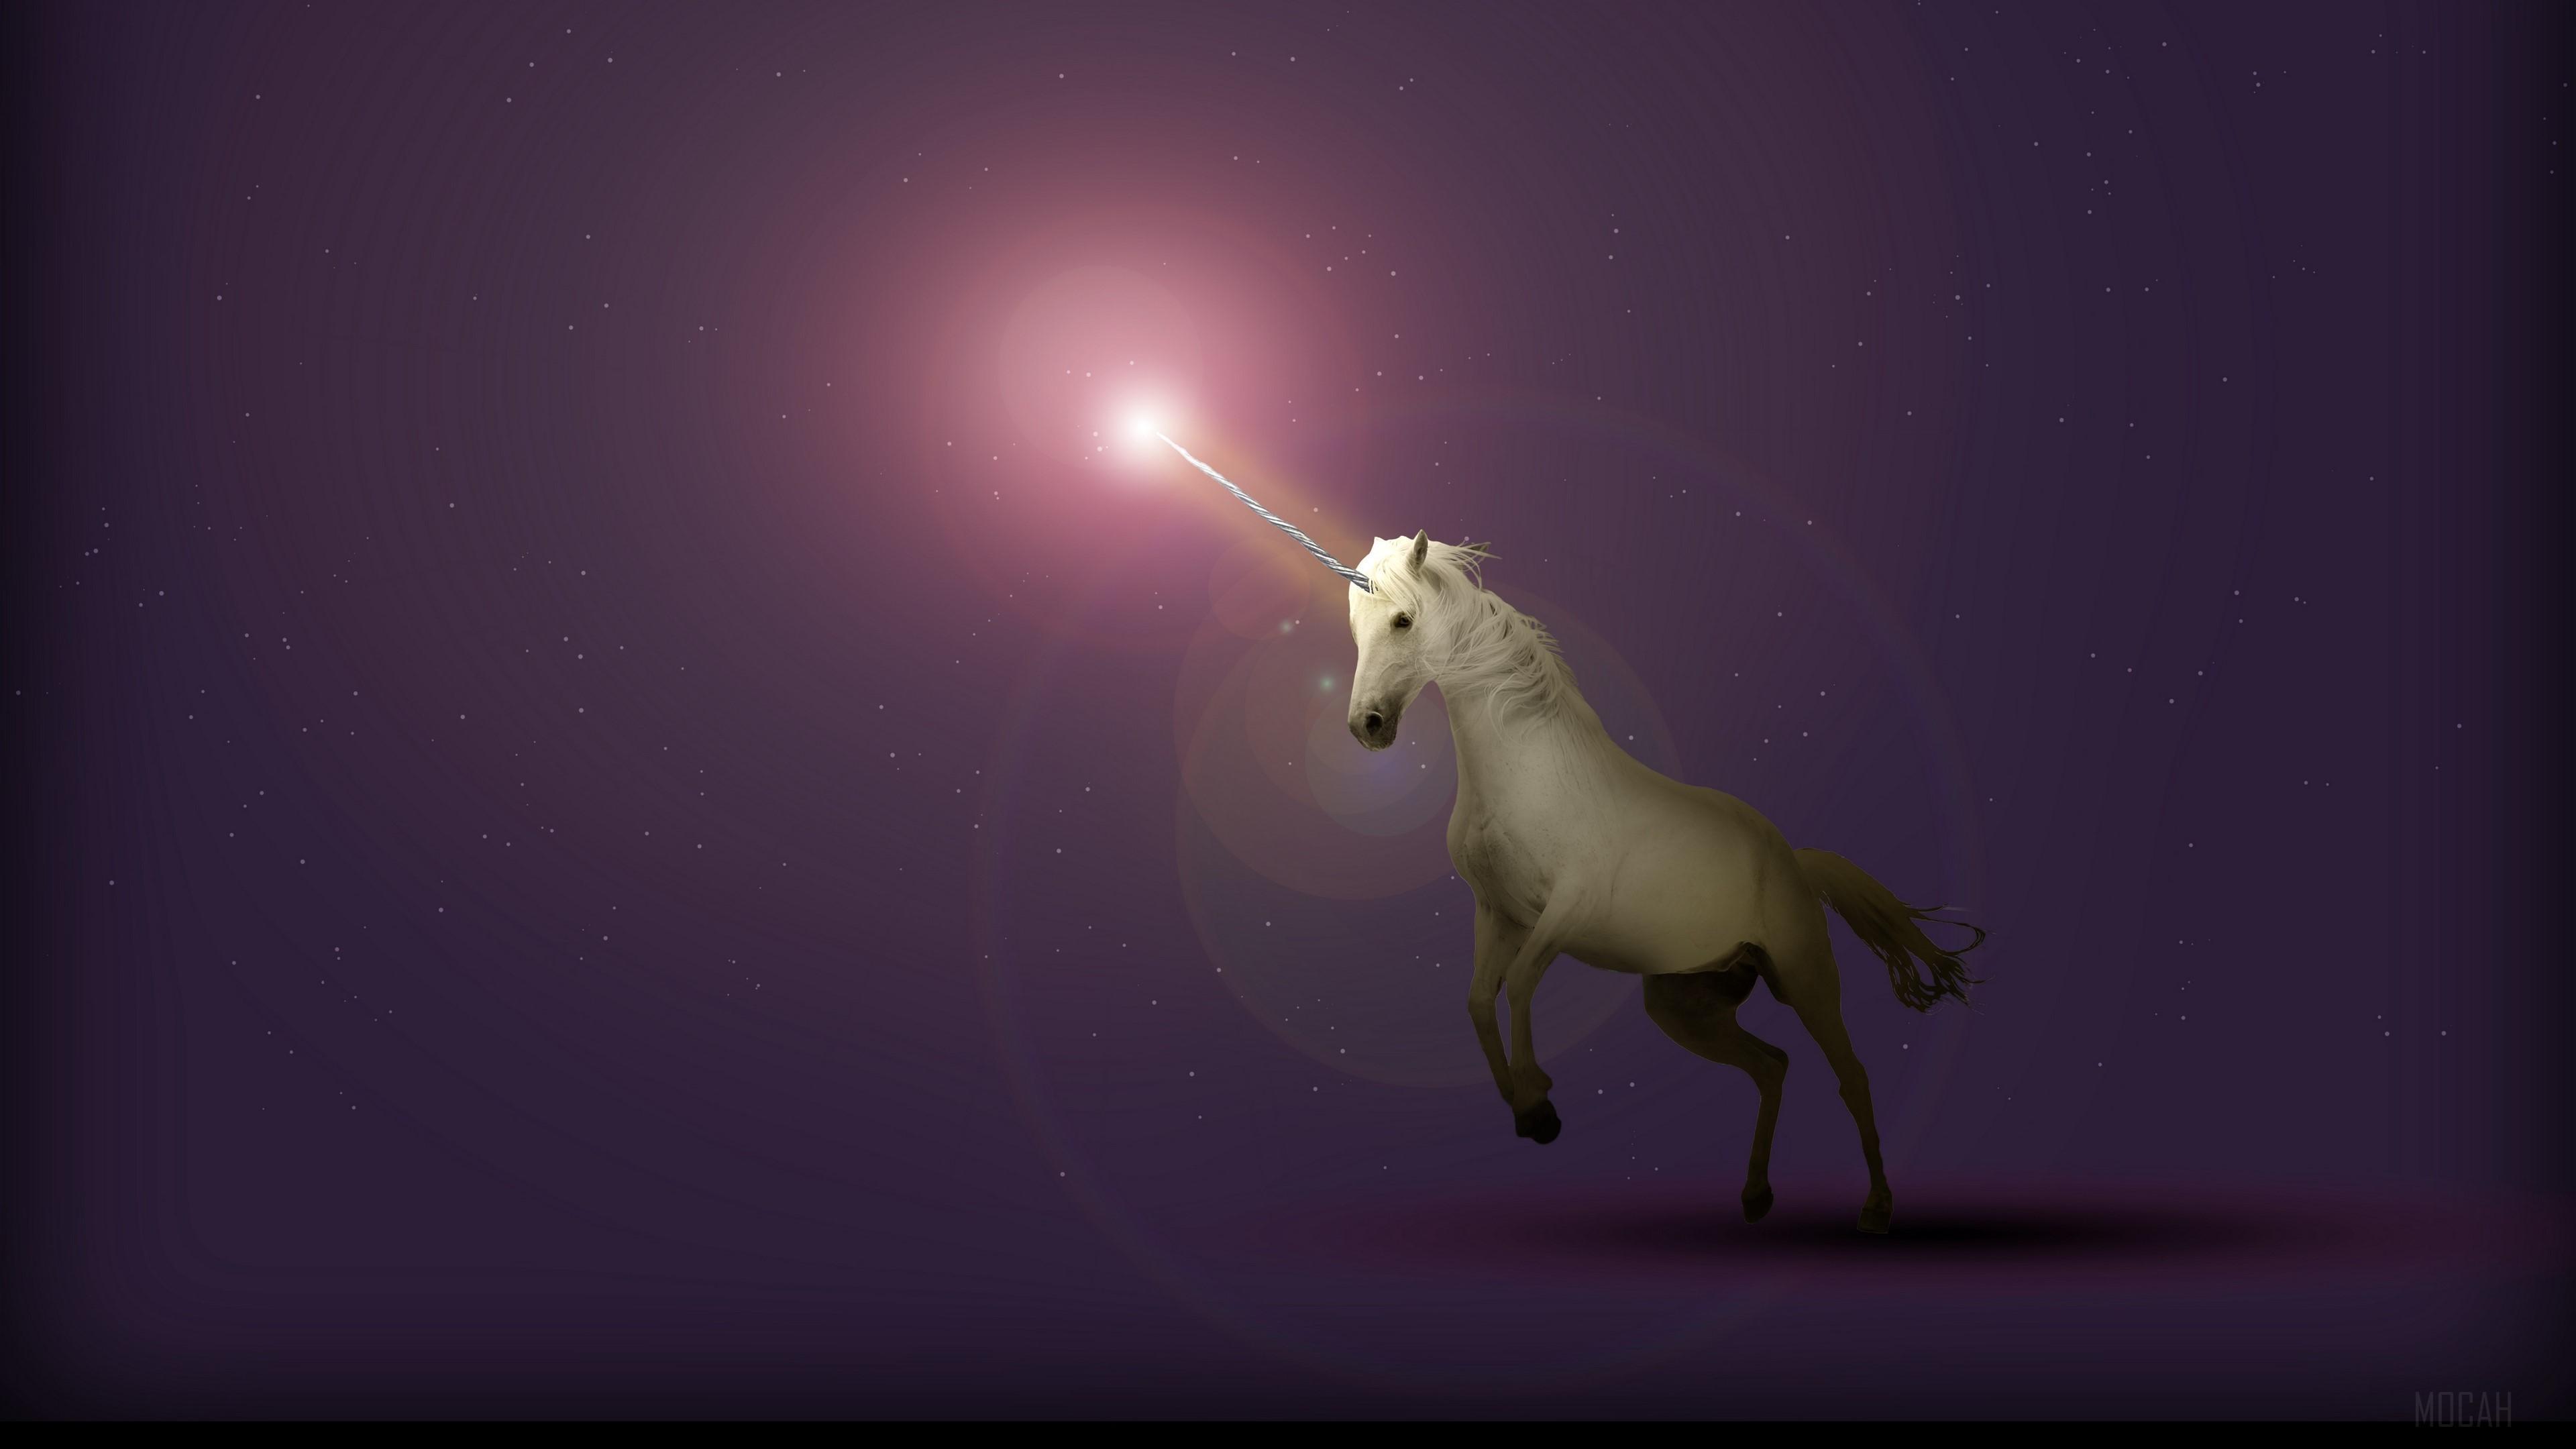 HD wallpaper, Unicorn, Starry Sky, Fantasy 4K, Art